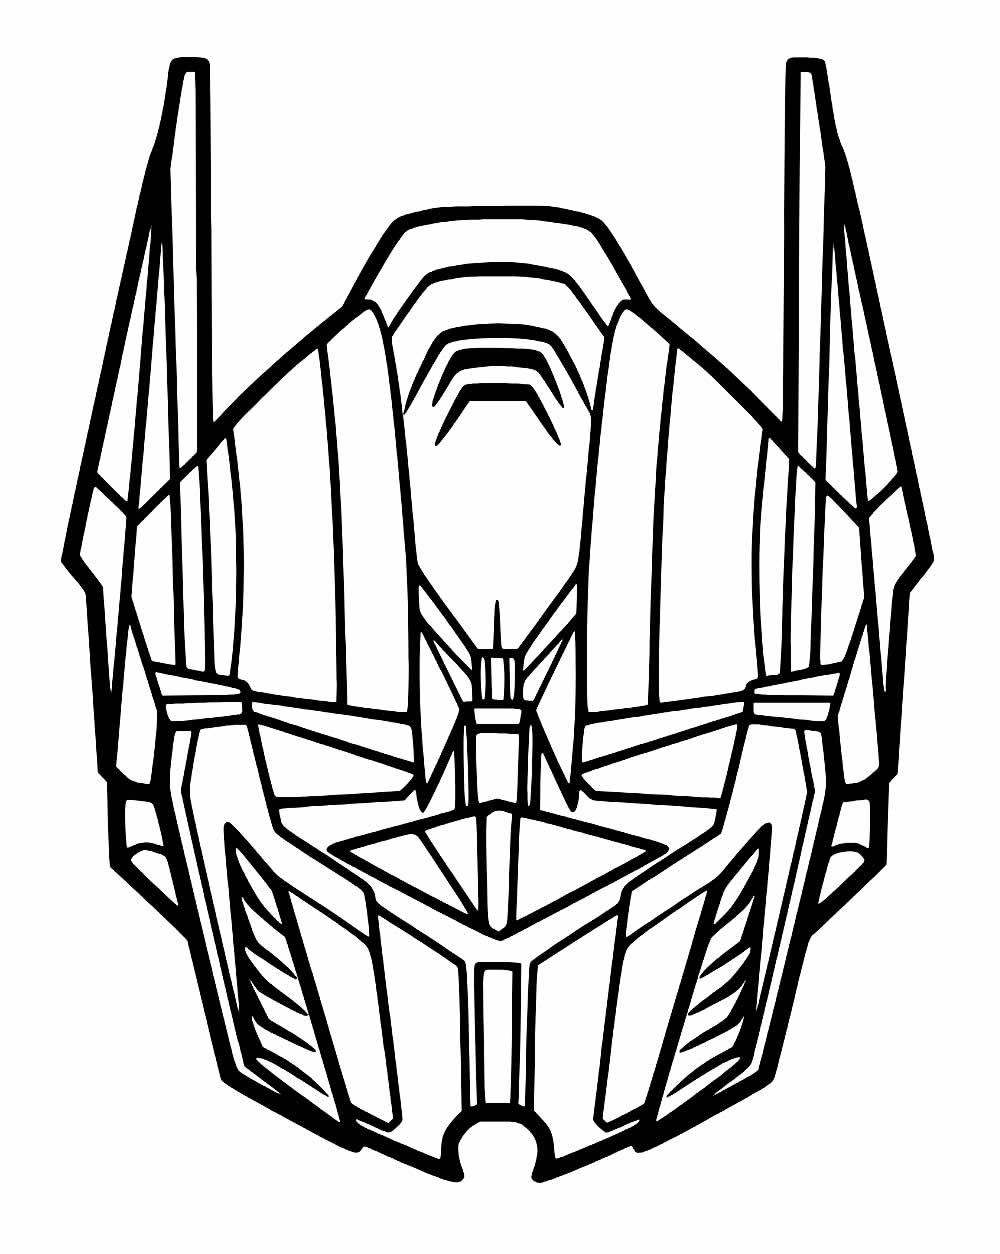 Máscara de Transformers